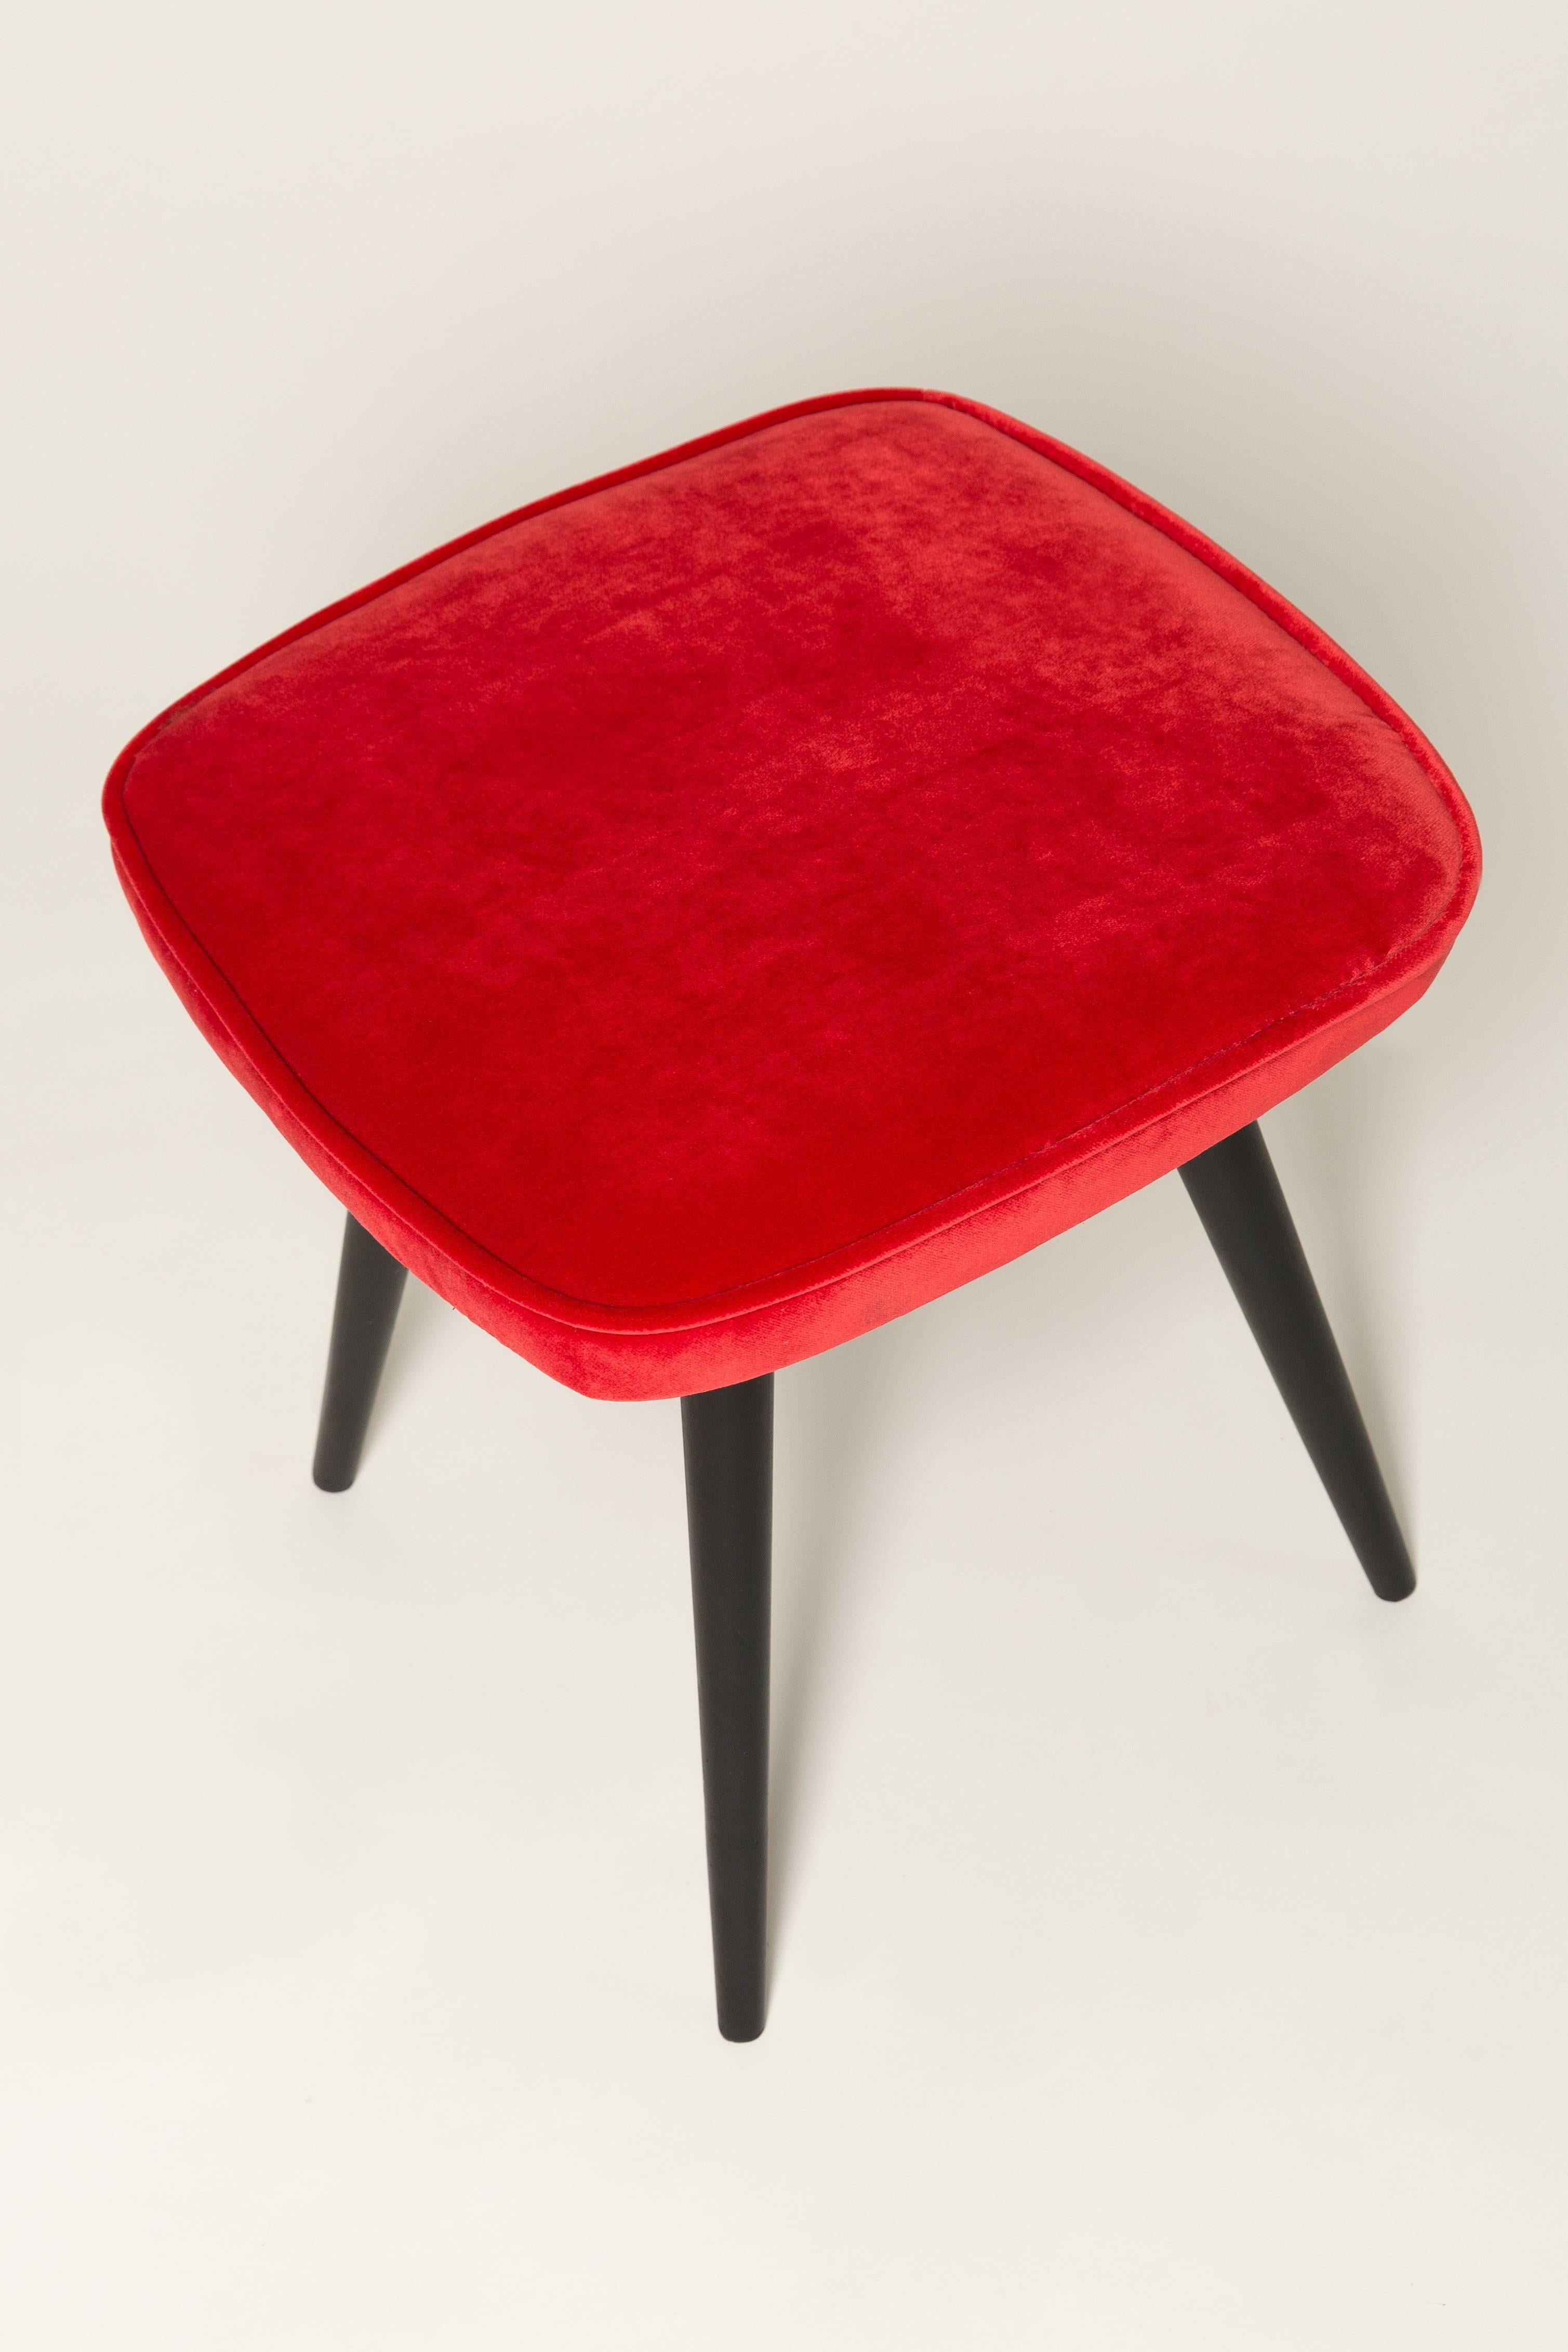 Tabouret du tournant des années 1960 et 1970. Belle sellerie en velours rouge. Le tabouret est composé d'une partie rembourrée, d'un siège et de pieds en bois se rétrécissant vers le bas, caractéristiques du style des années 1960. Nous pouvons